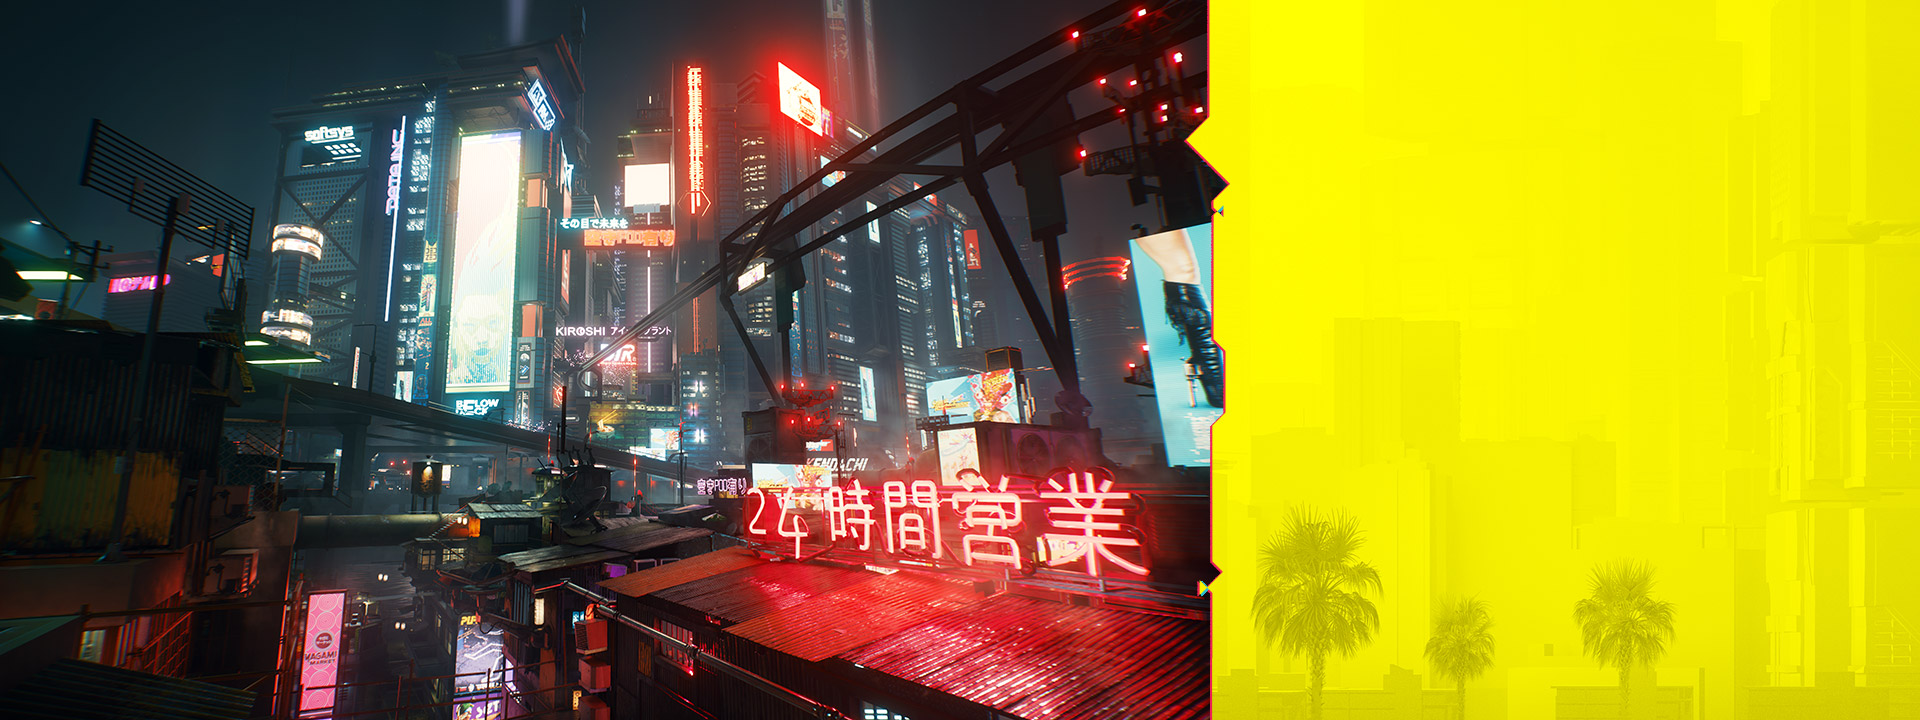 Night City'deki neon ışıklı tabelalar, gece puslu bir şehir manzarasında parıldıyor.